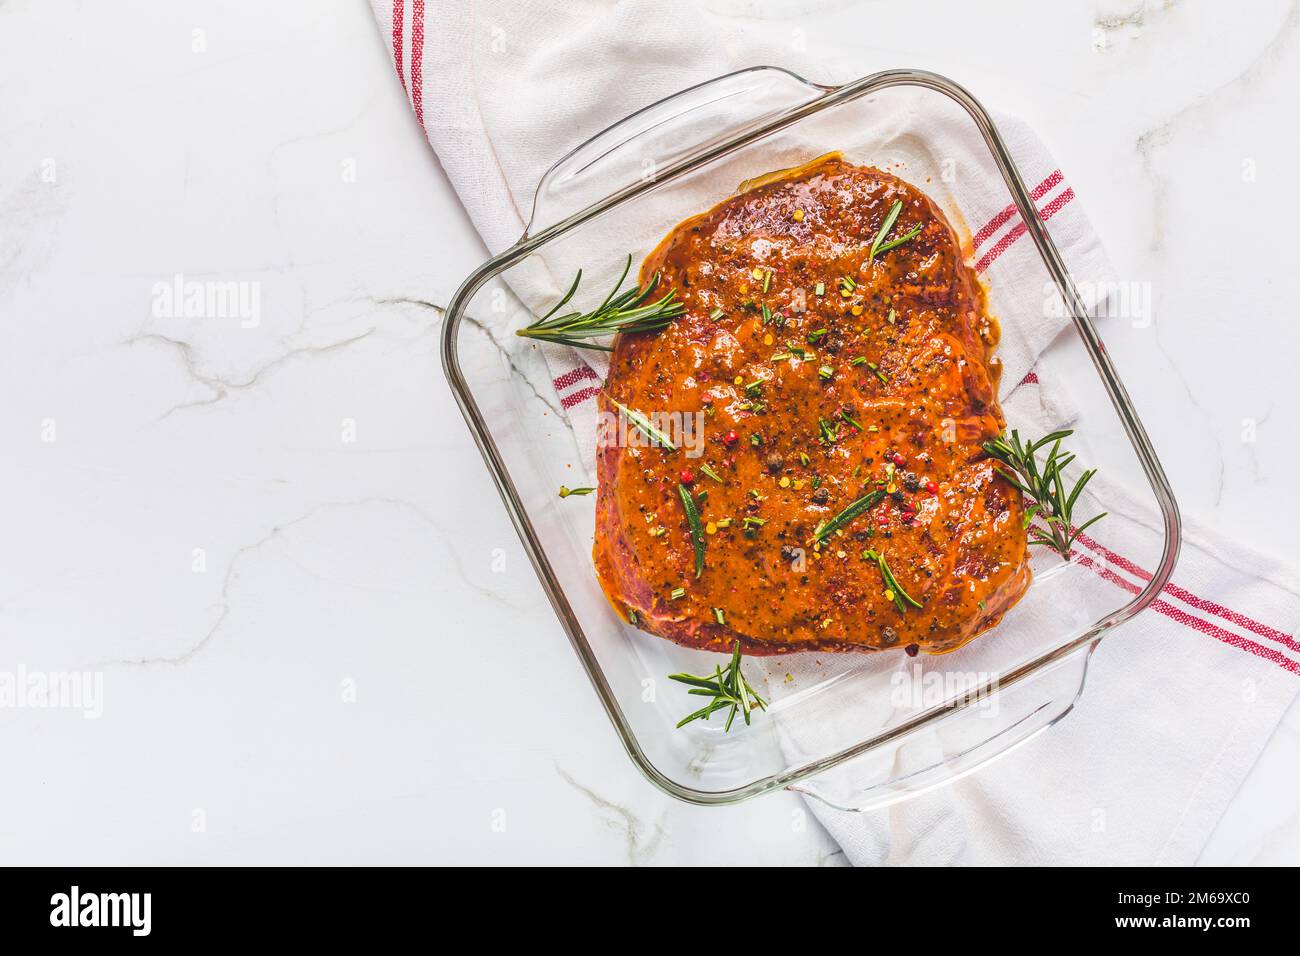 Steak de flanc mariné classique dans un bol sur une table de cuisine blanche Banque D'Images